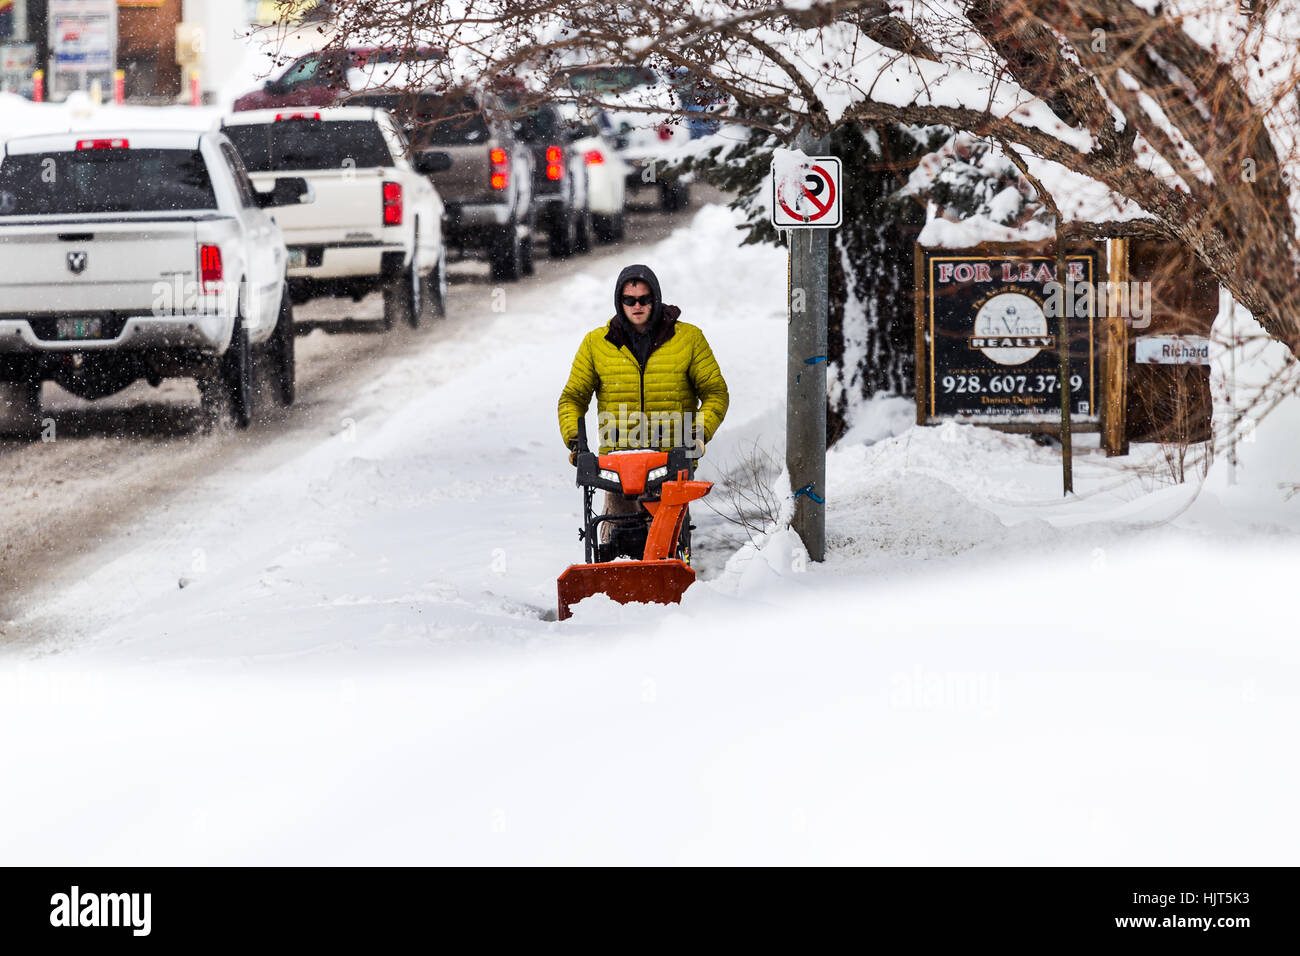 Un homme utilise un souffleur de neige pour dégager le trottoir après une puissante tempête de neige hivernale Banque D'Images